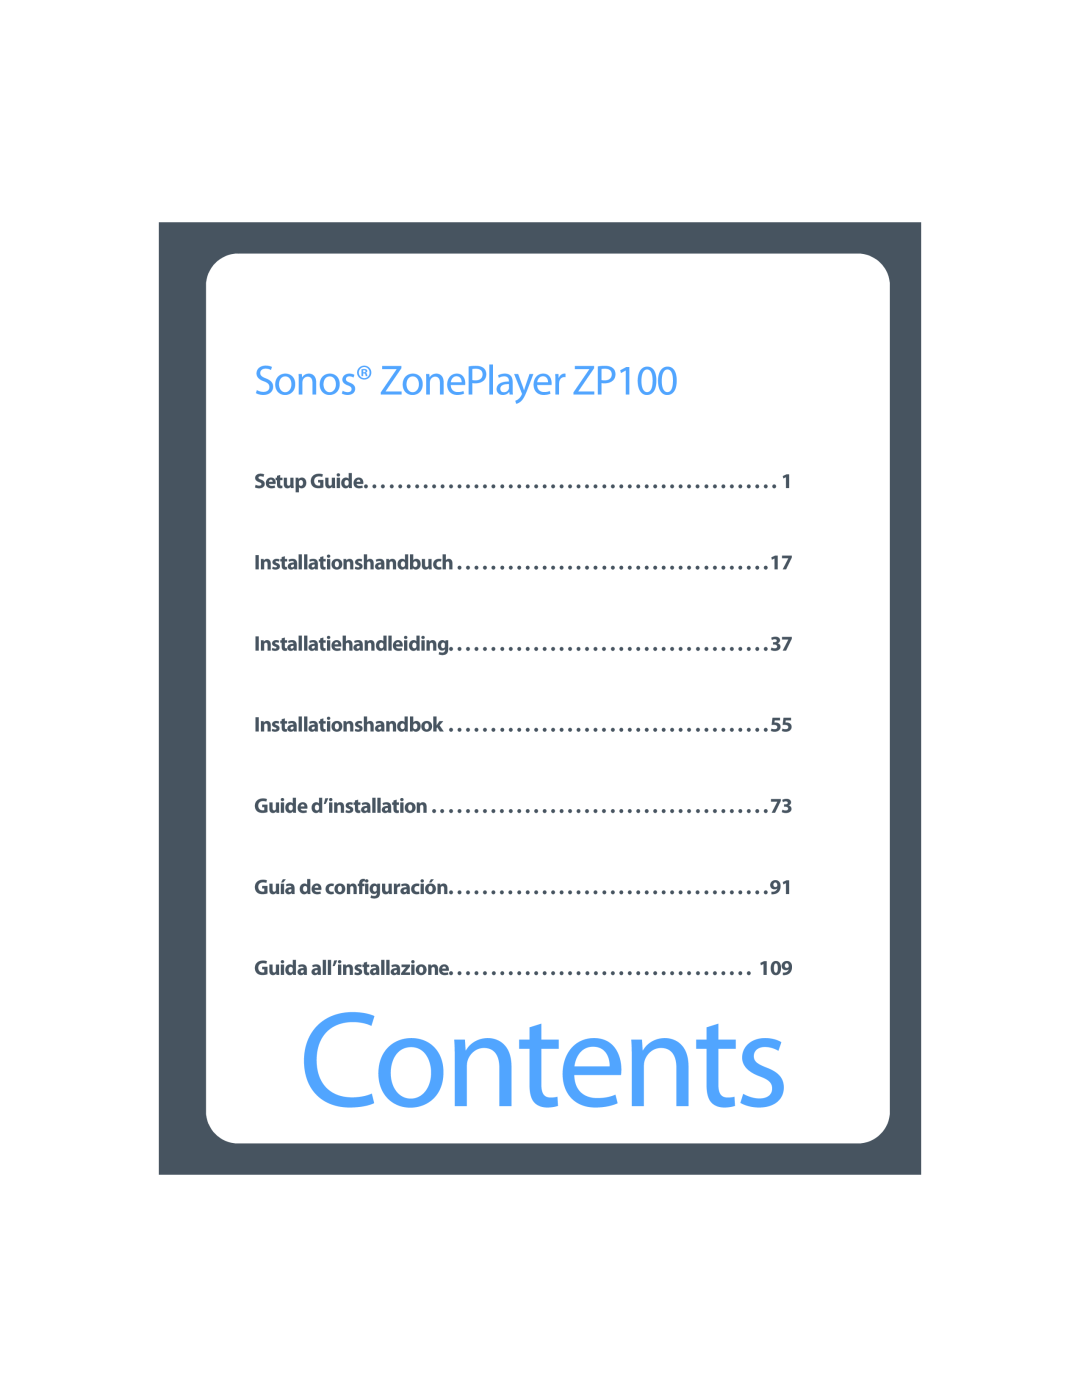 Sonos setup guide Contents, Sonos ZonePlayer ZP100 